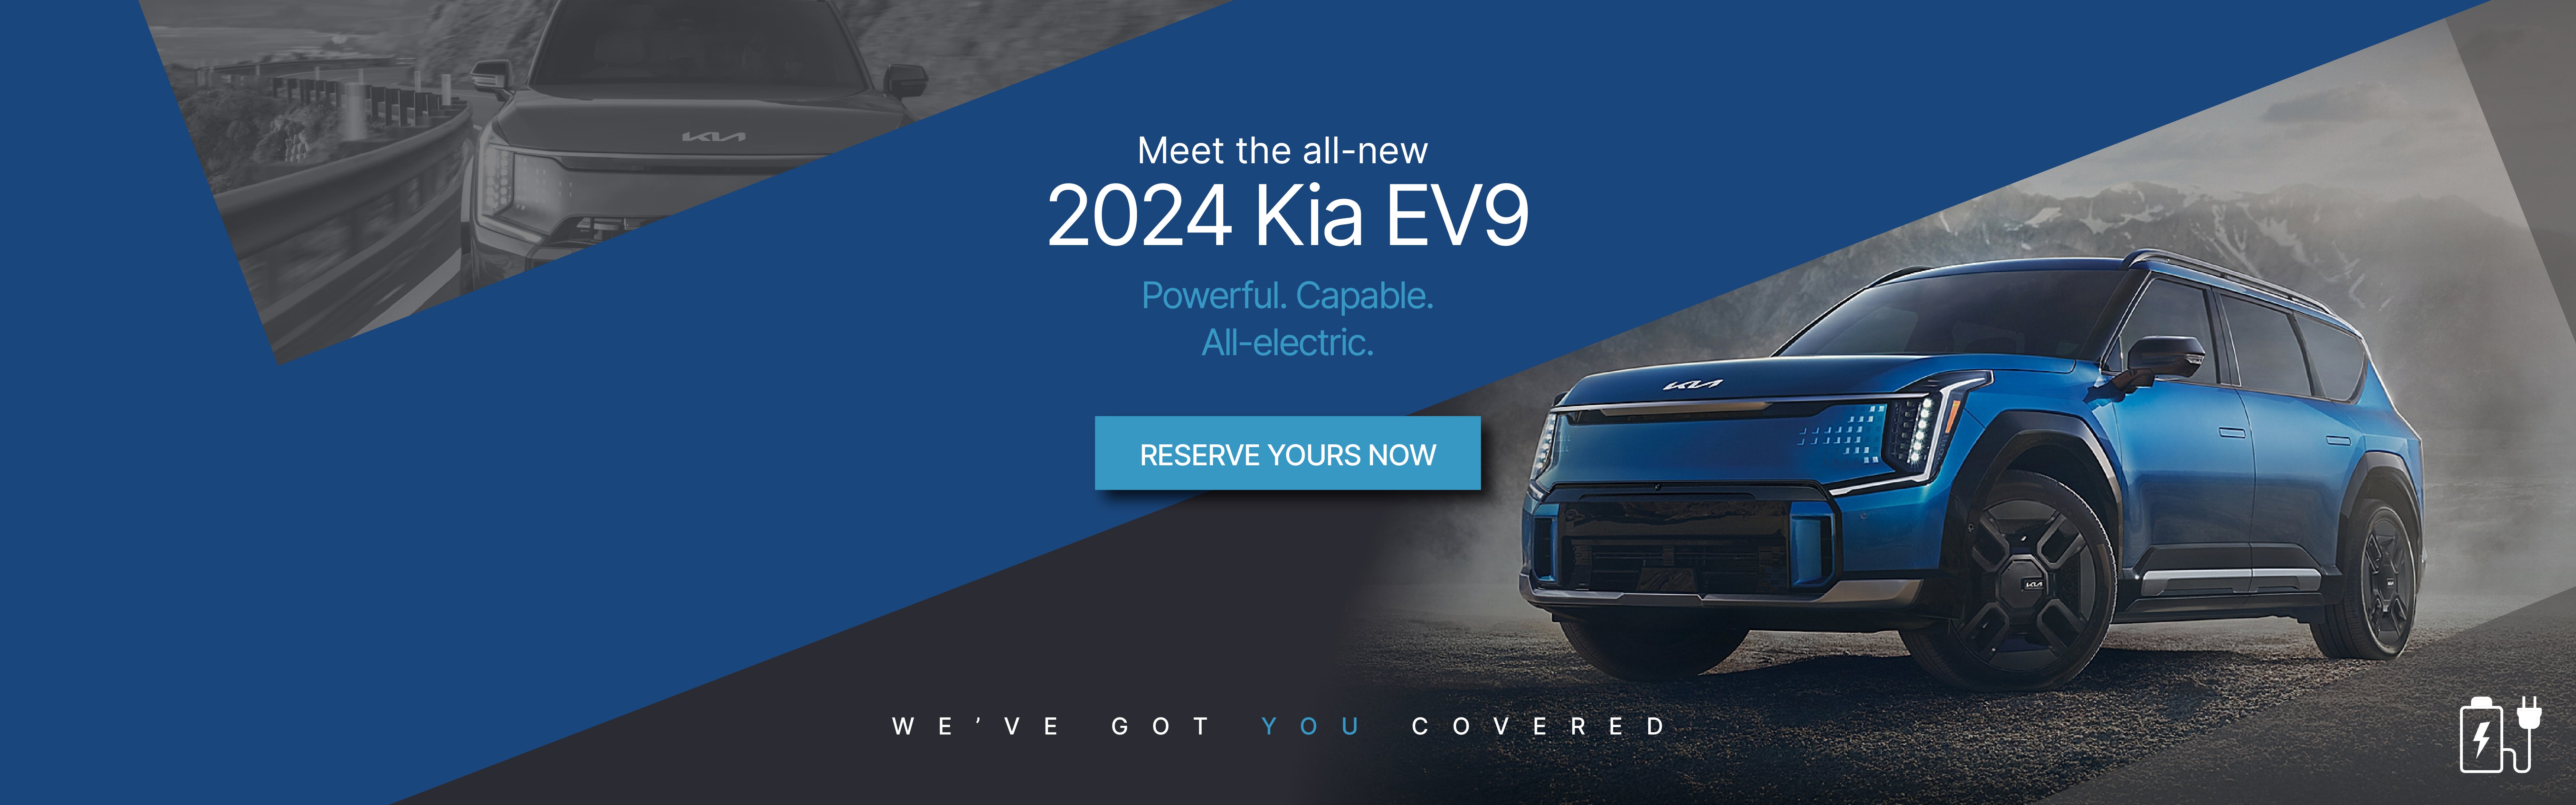 2024 Kia EV9